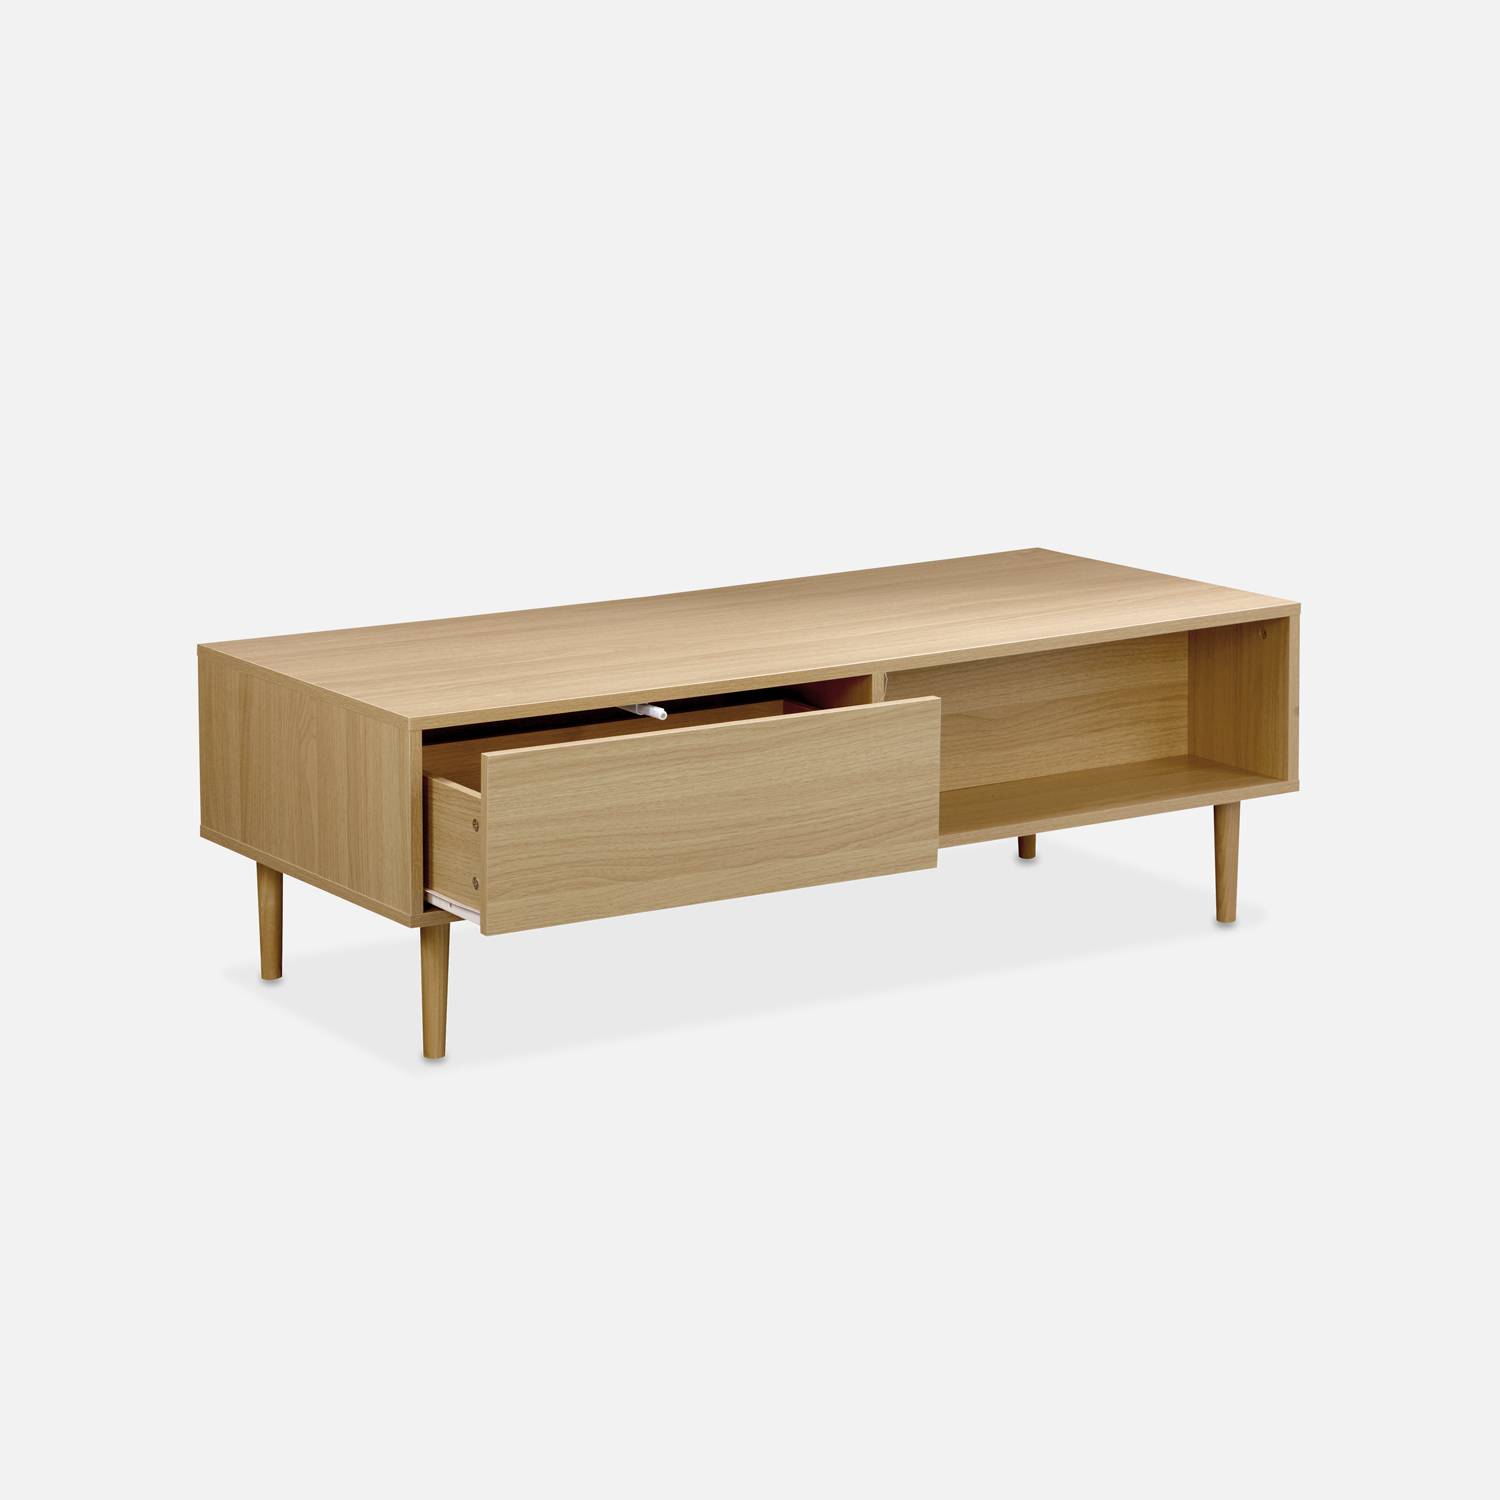 Table basse en décor bois - Mika - 2 tiroirs, 2 espaces de rangement, L 120 x l 55 x H 40cm Photo4